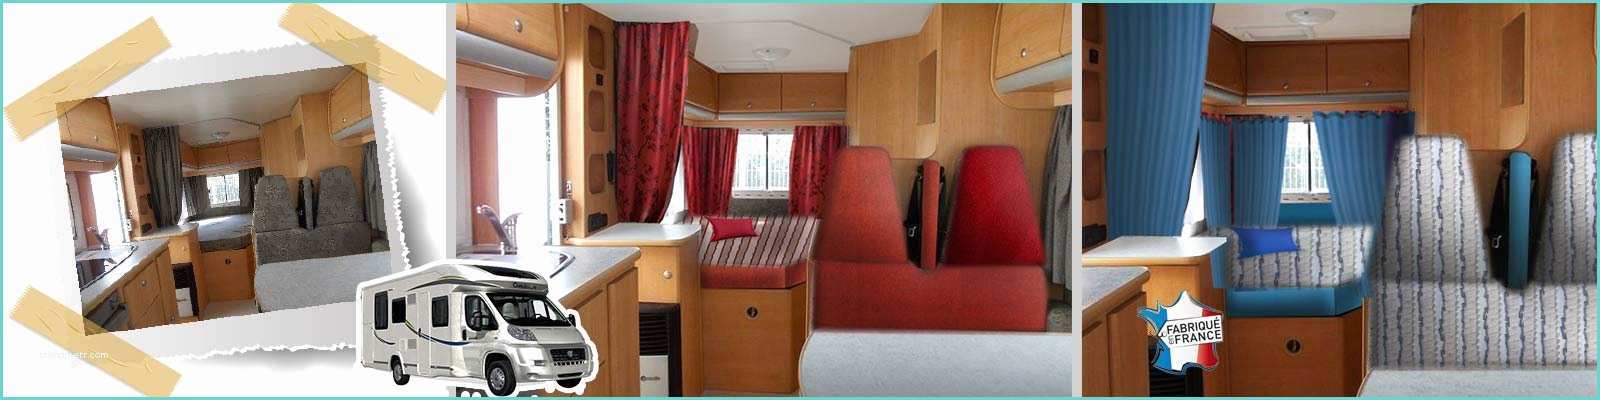 Relooking Interieur Camping Car Confection Et Retouche Ammeublement Customisation De